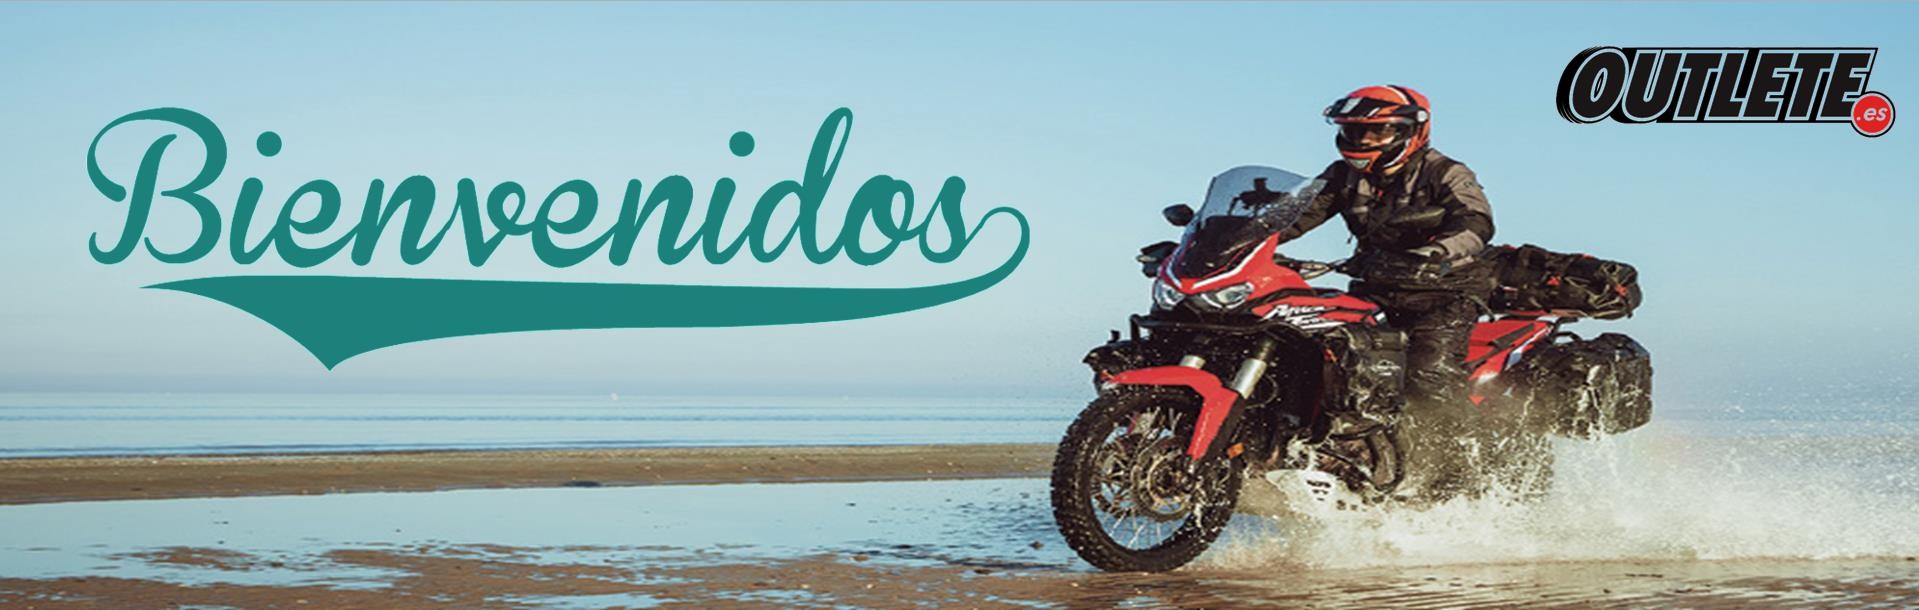 Bienvenida a outlete moto - Tu tienda de accesorios de moto